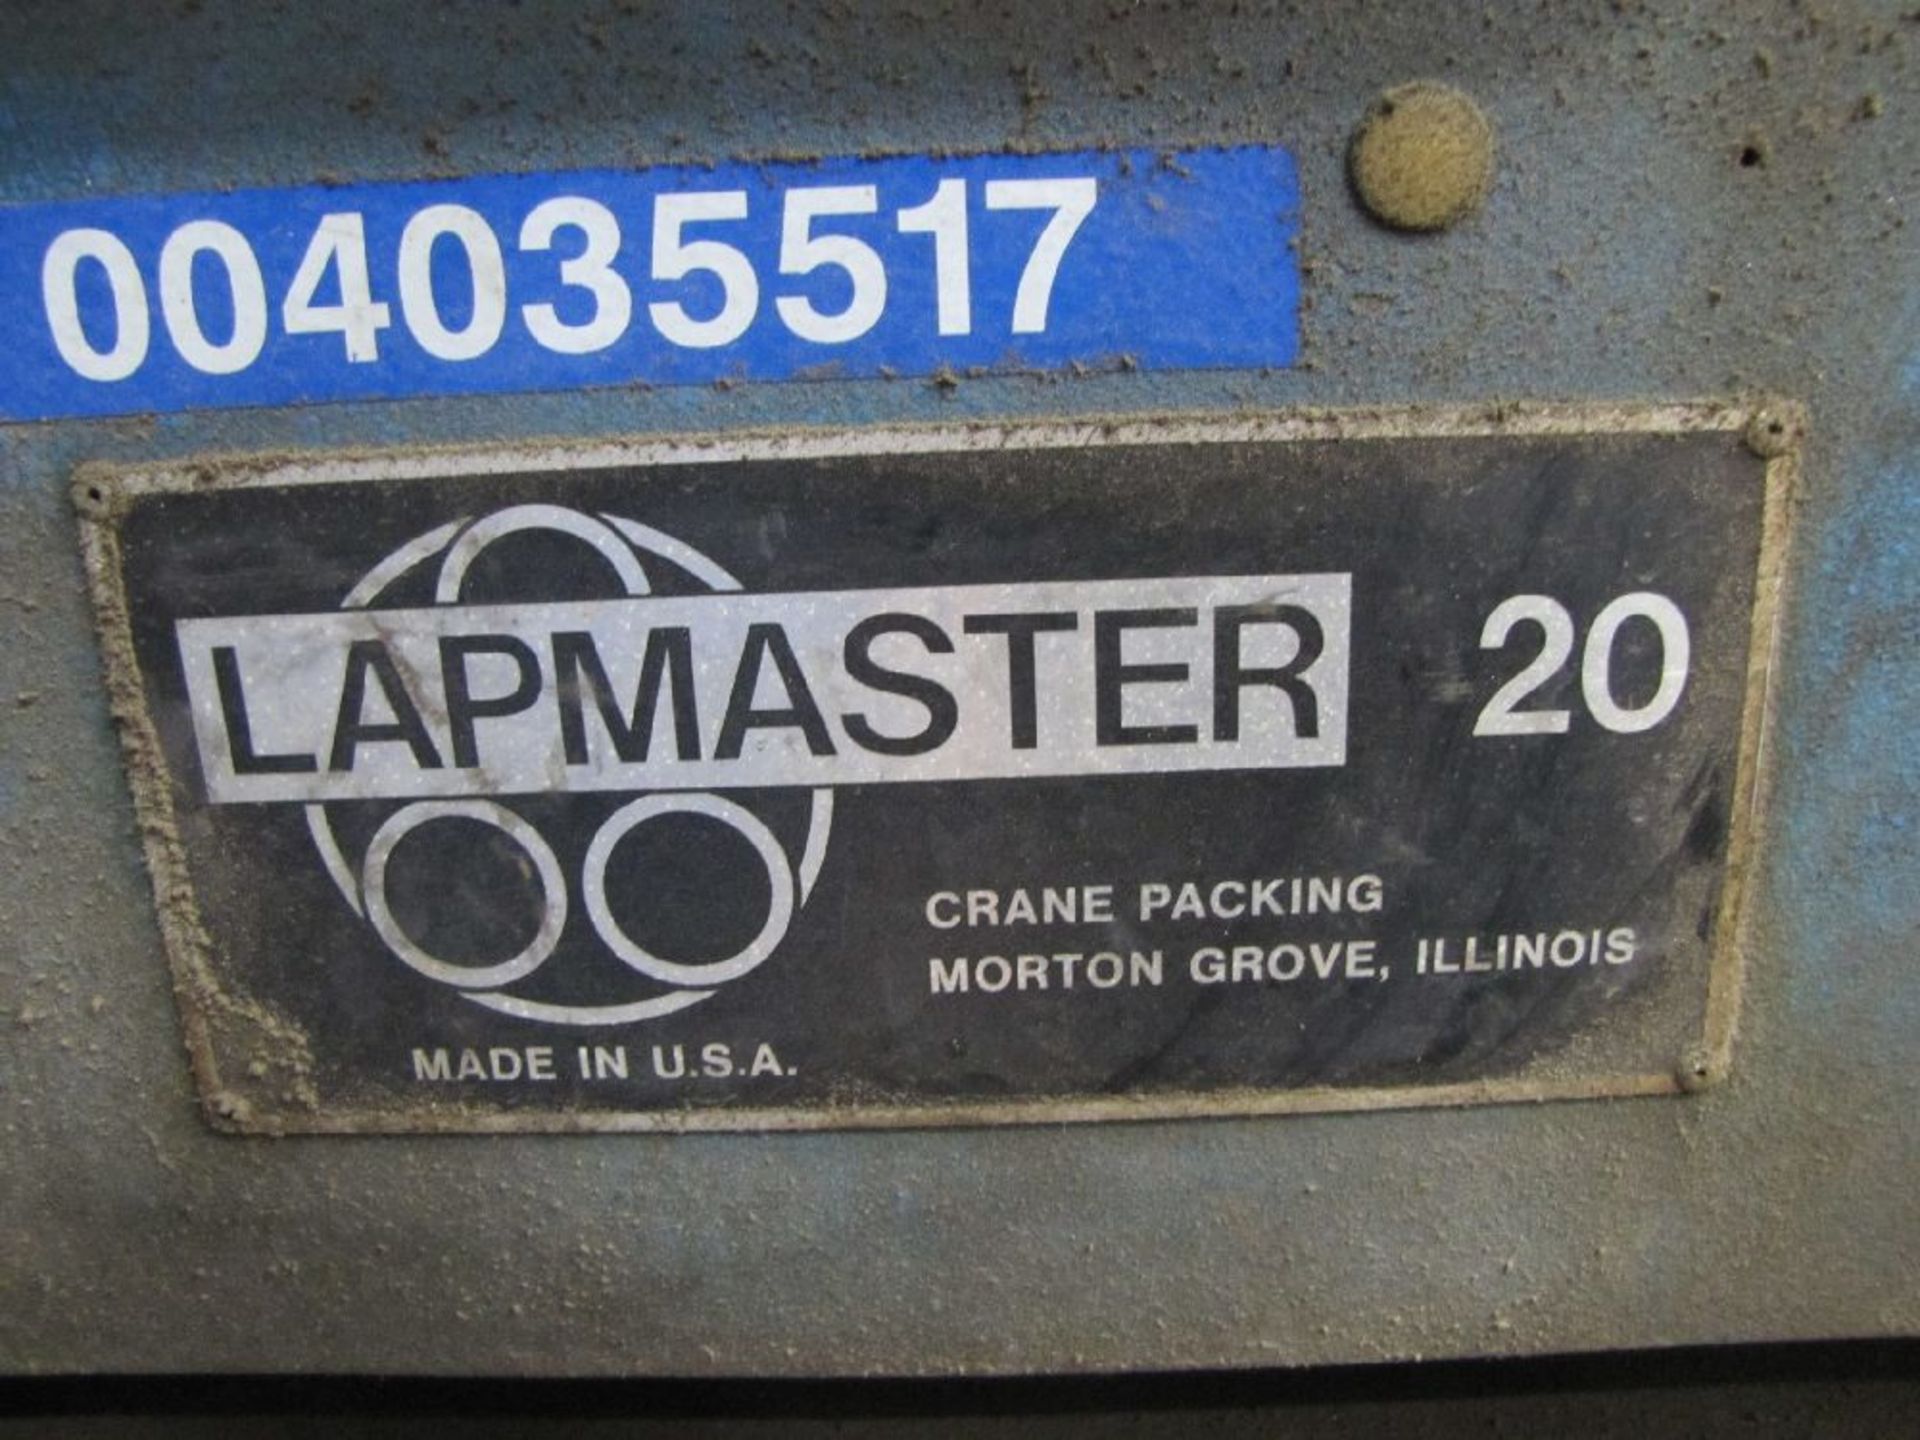 Lapmaster Model 20 Lapping Machine - Image 3 of 3